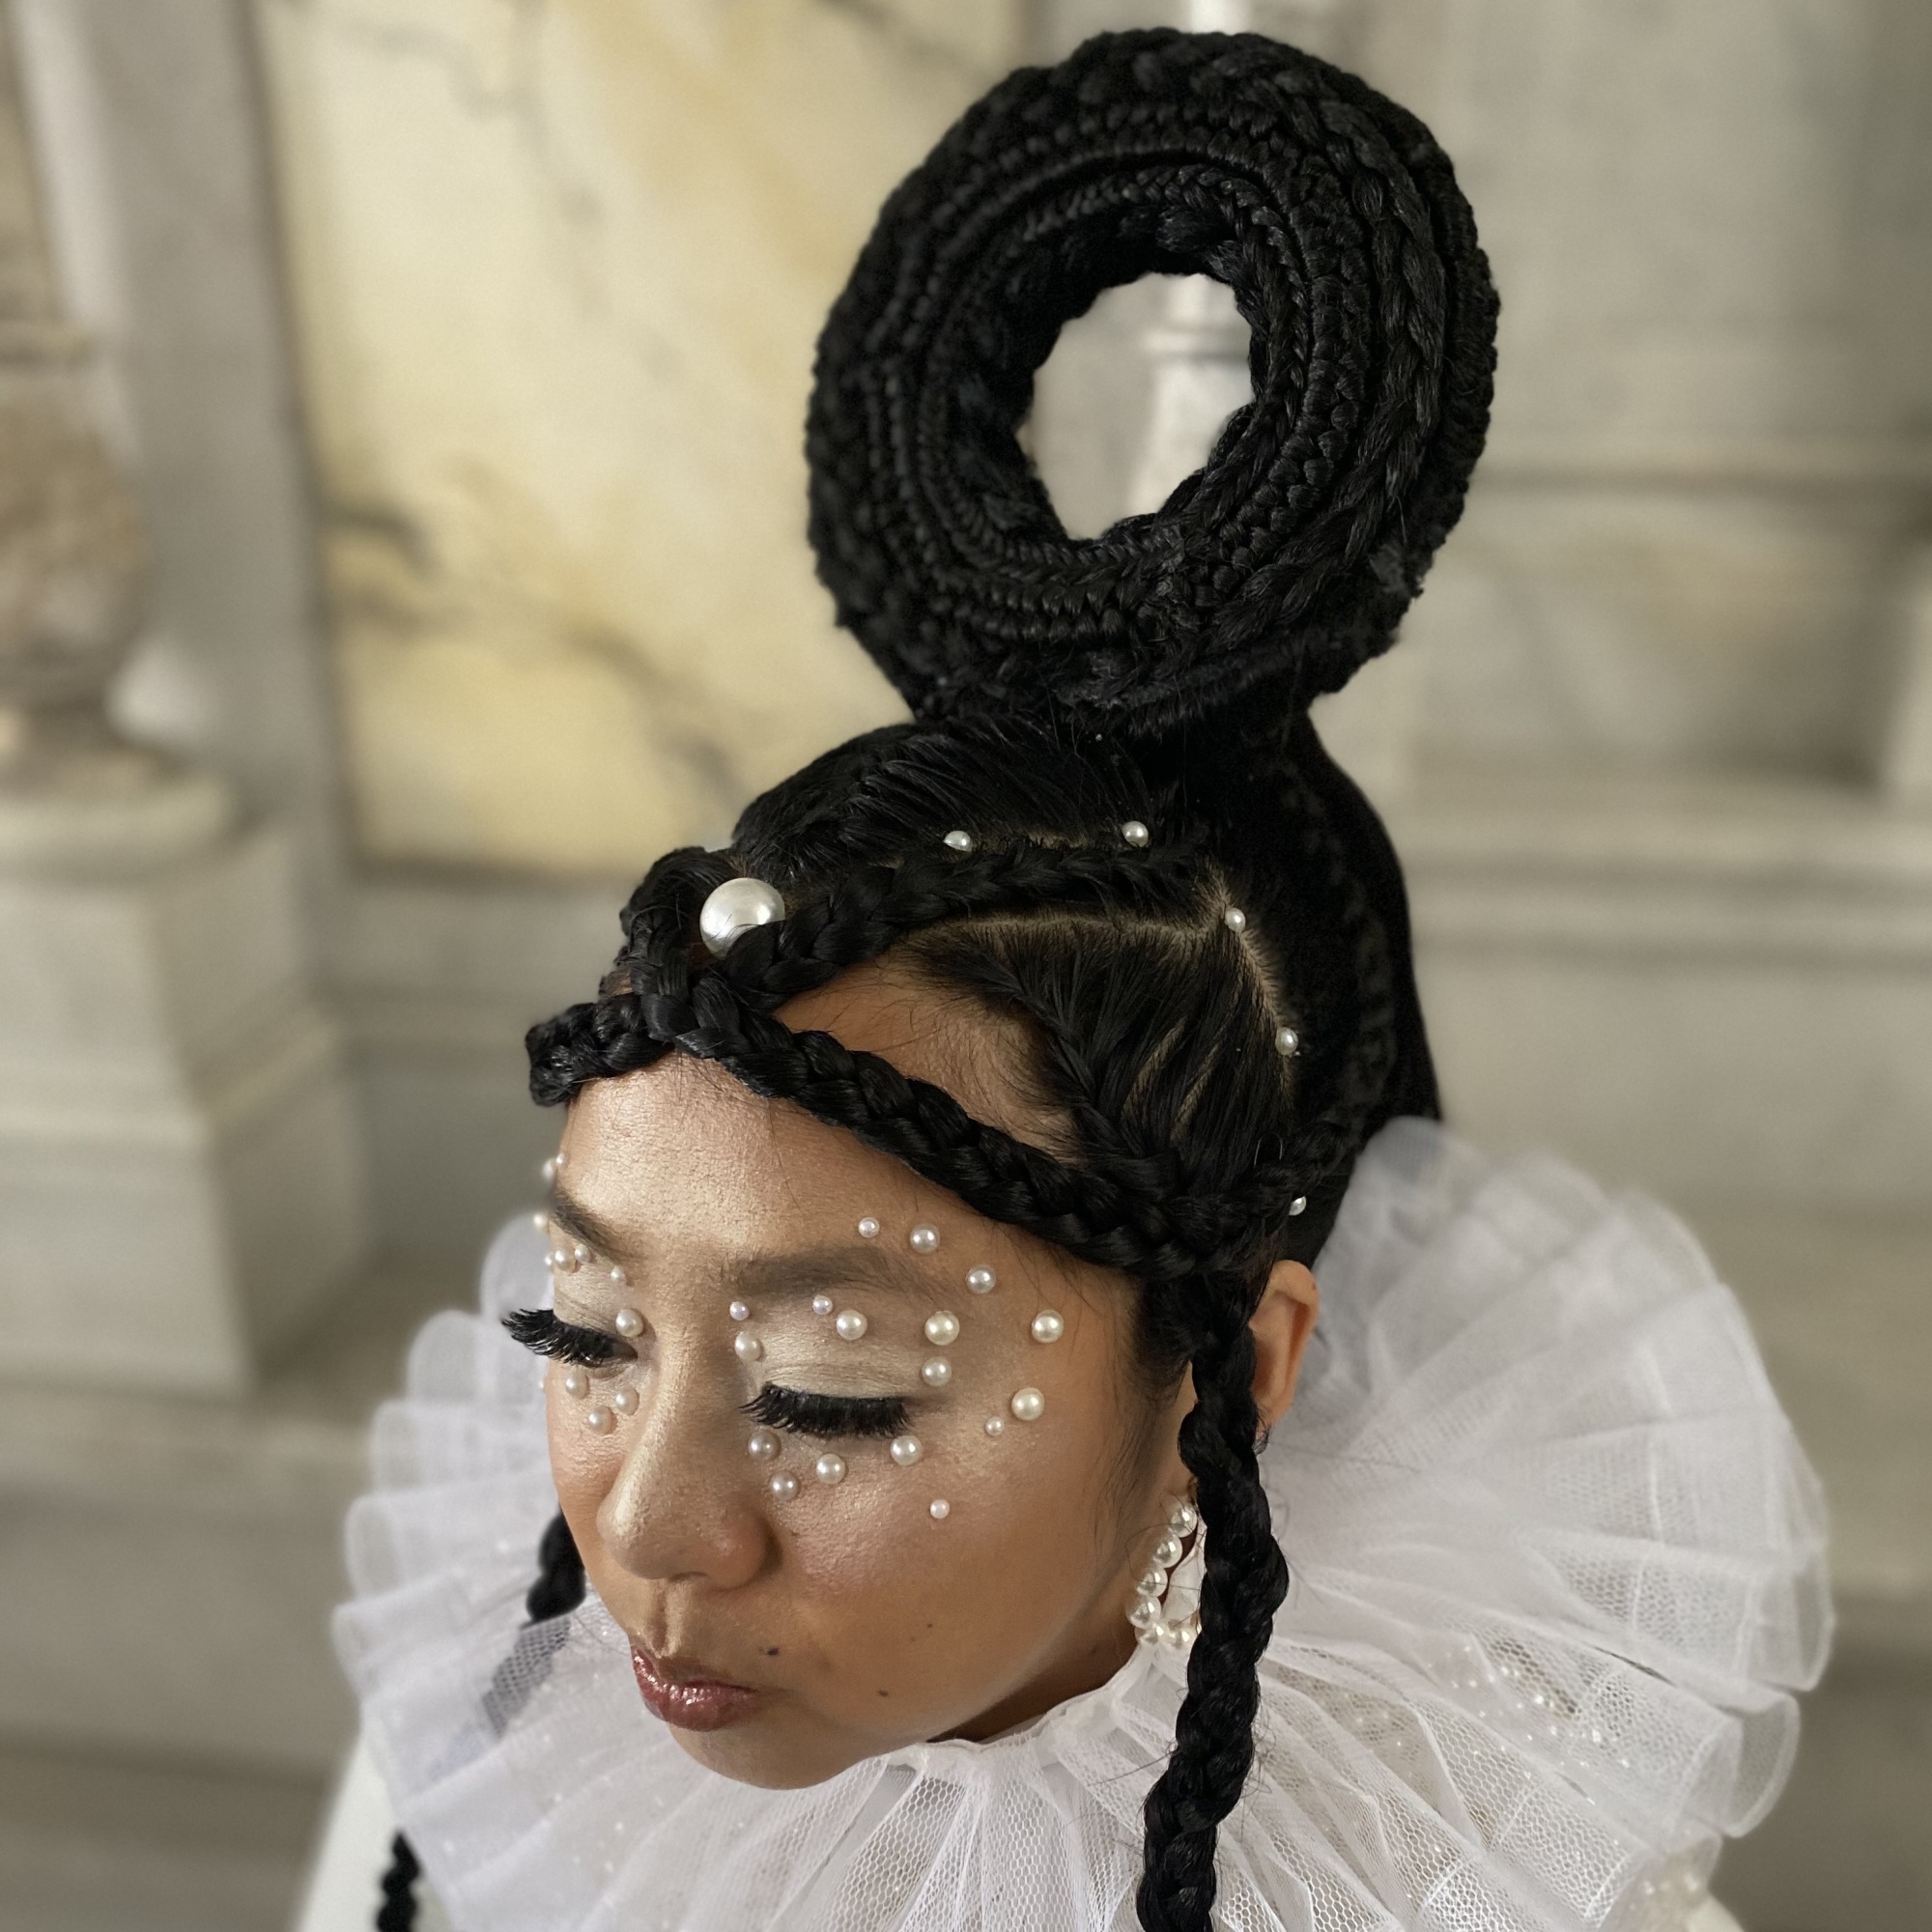 Une femme avec un maquillage blanc chatoyant et des perles sur son visage.  Un bagel fait de cheveux tressés est posé sur le dessus de sa tête.